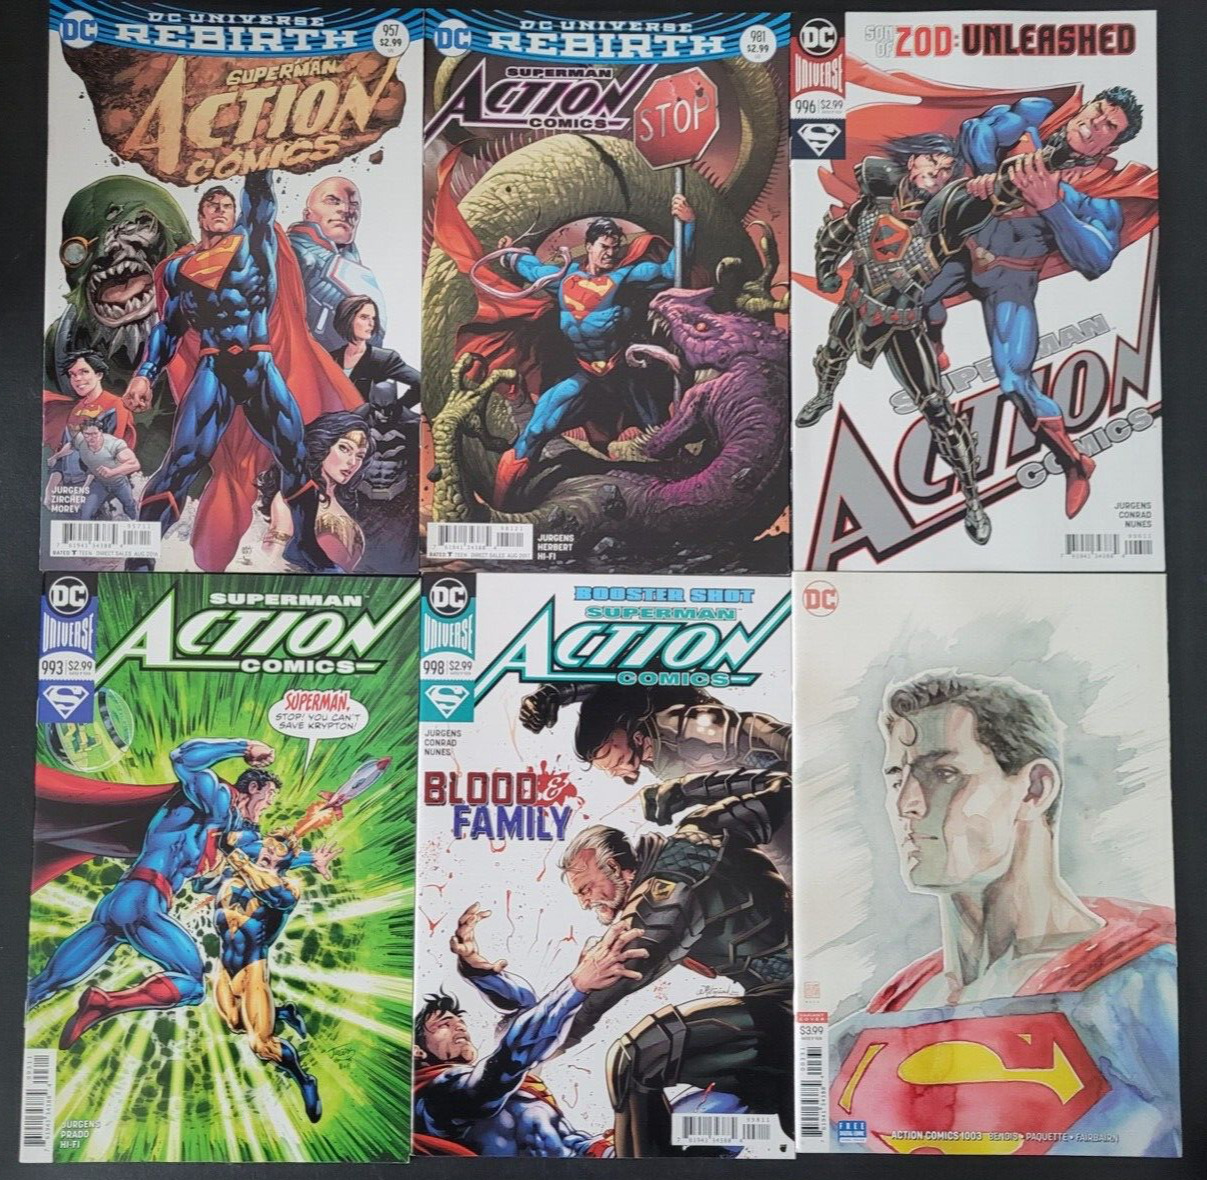 SUPERMAN ACTION COMICS SET OF 18 ISSUES (2016) DC REBIRTH COMICS SUPERBOY LOIS